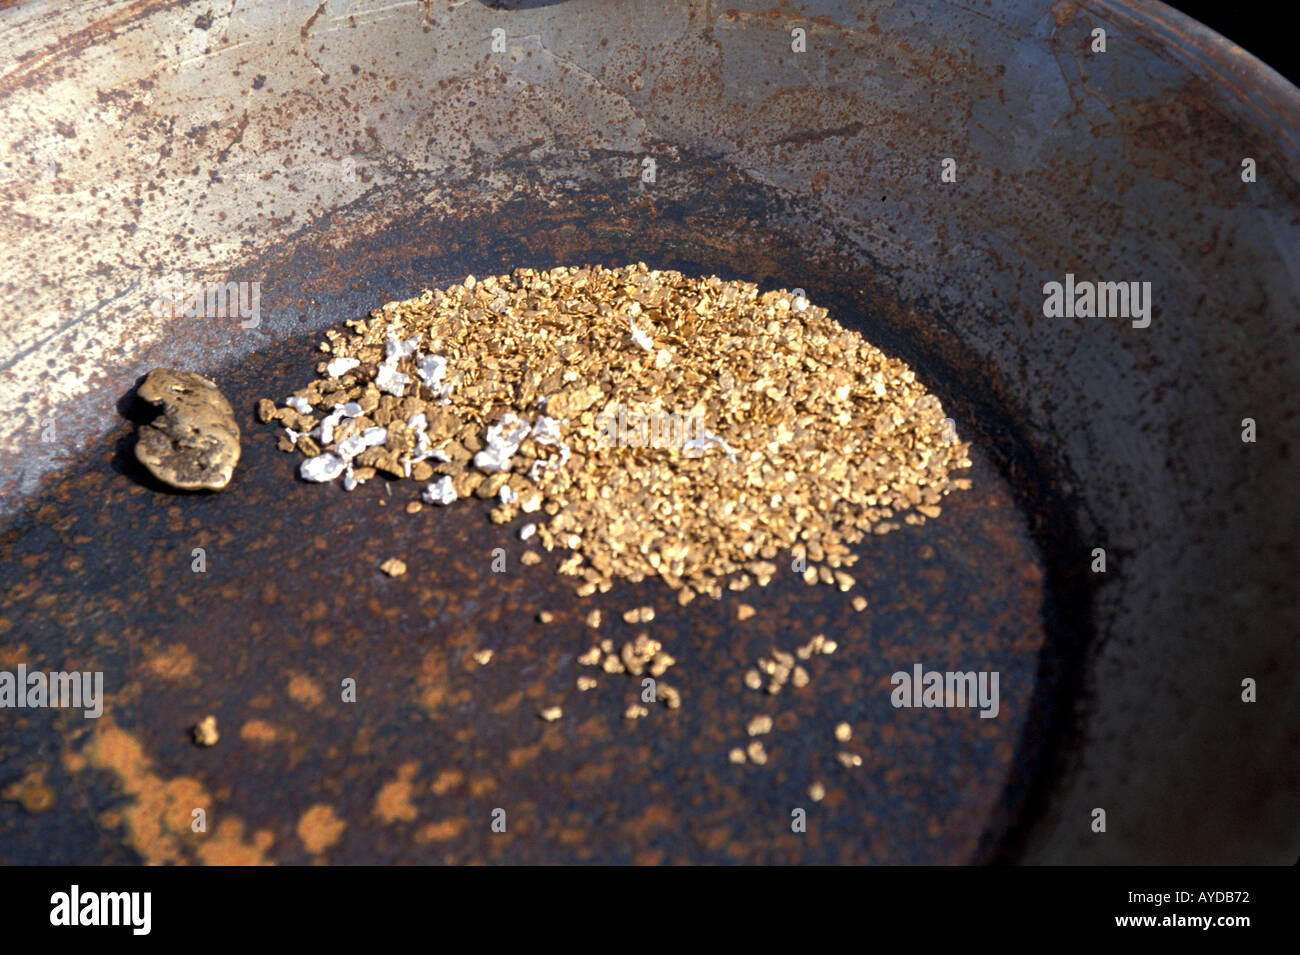 Alaska Goldwaschen gold beliebt Fairbanks touristische Attraktion Flocken  am Boden der Pfanne Stockfotografie - Alamy